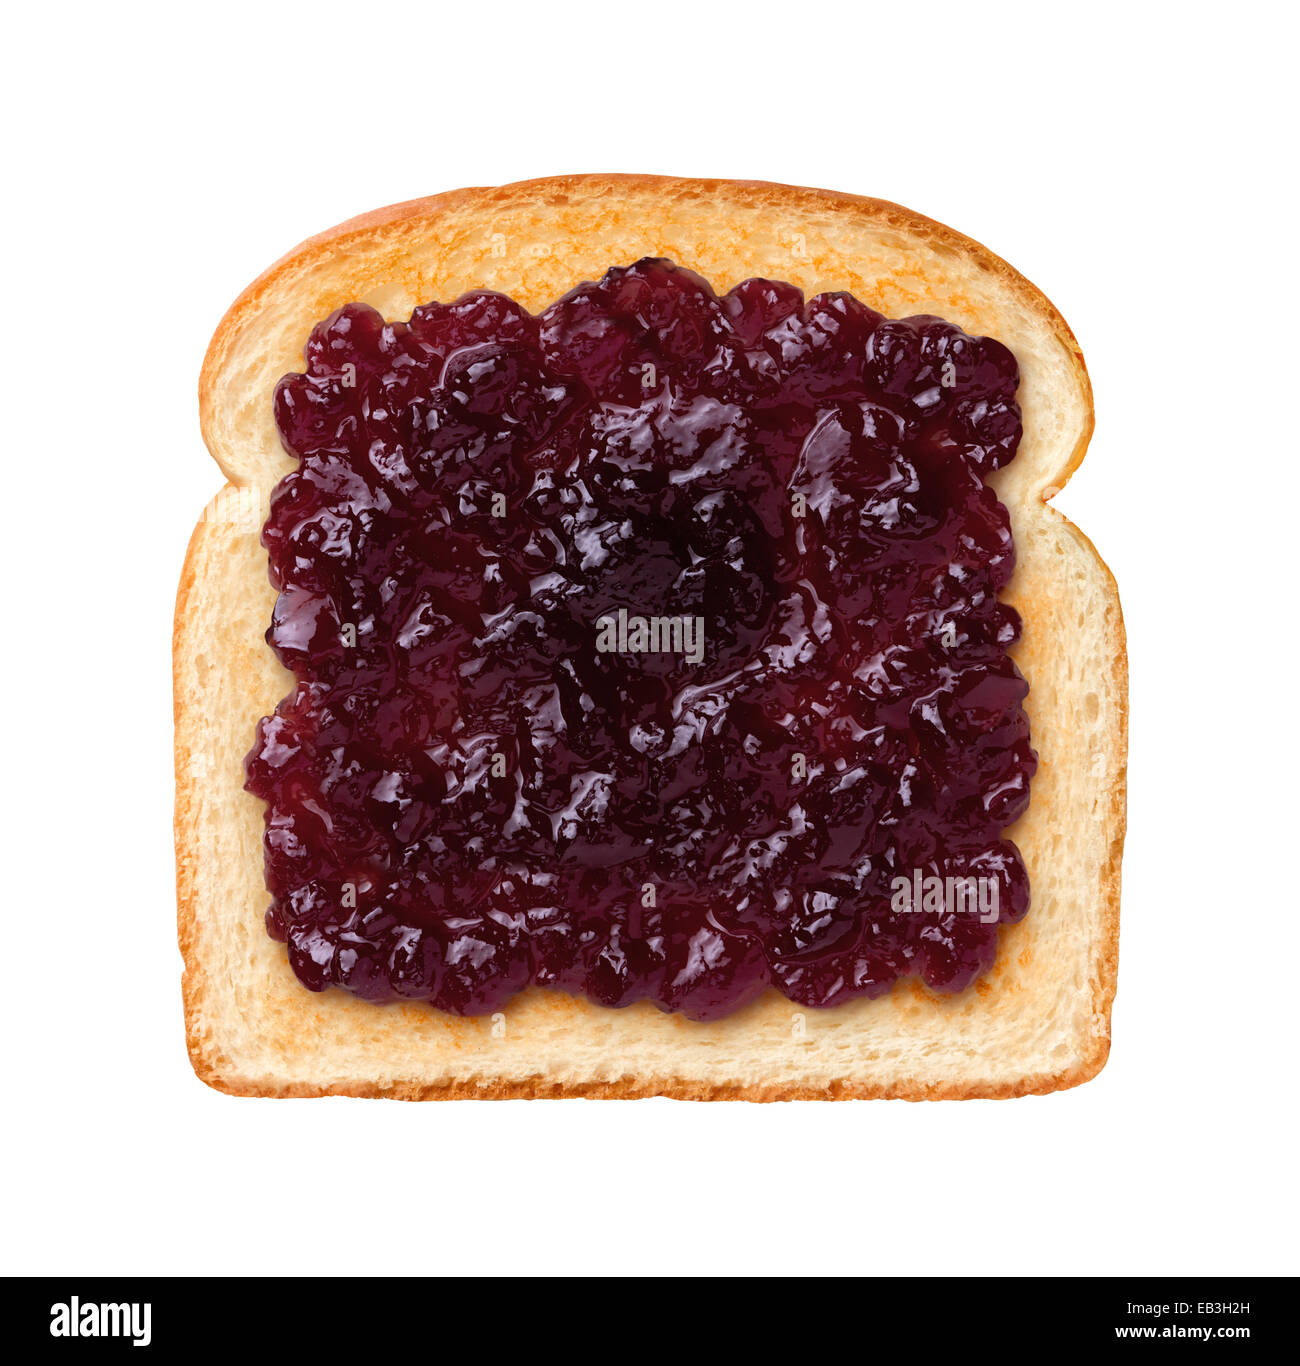 Vista aérea de una sola rebanada de pan tostado con jalea de uva, o mermelada. Jalea es una propagación elástico dulce hecha de jugo de frutas y azúcar Foto de stock